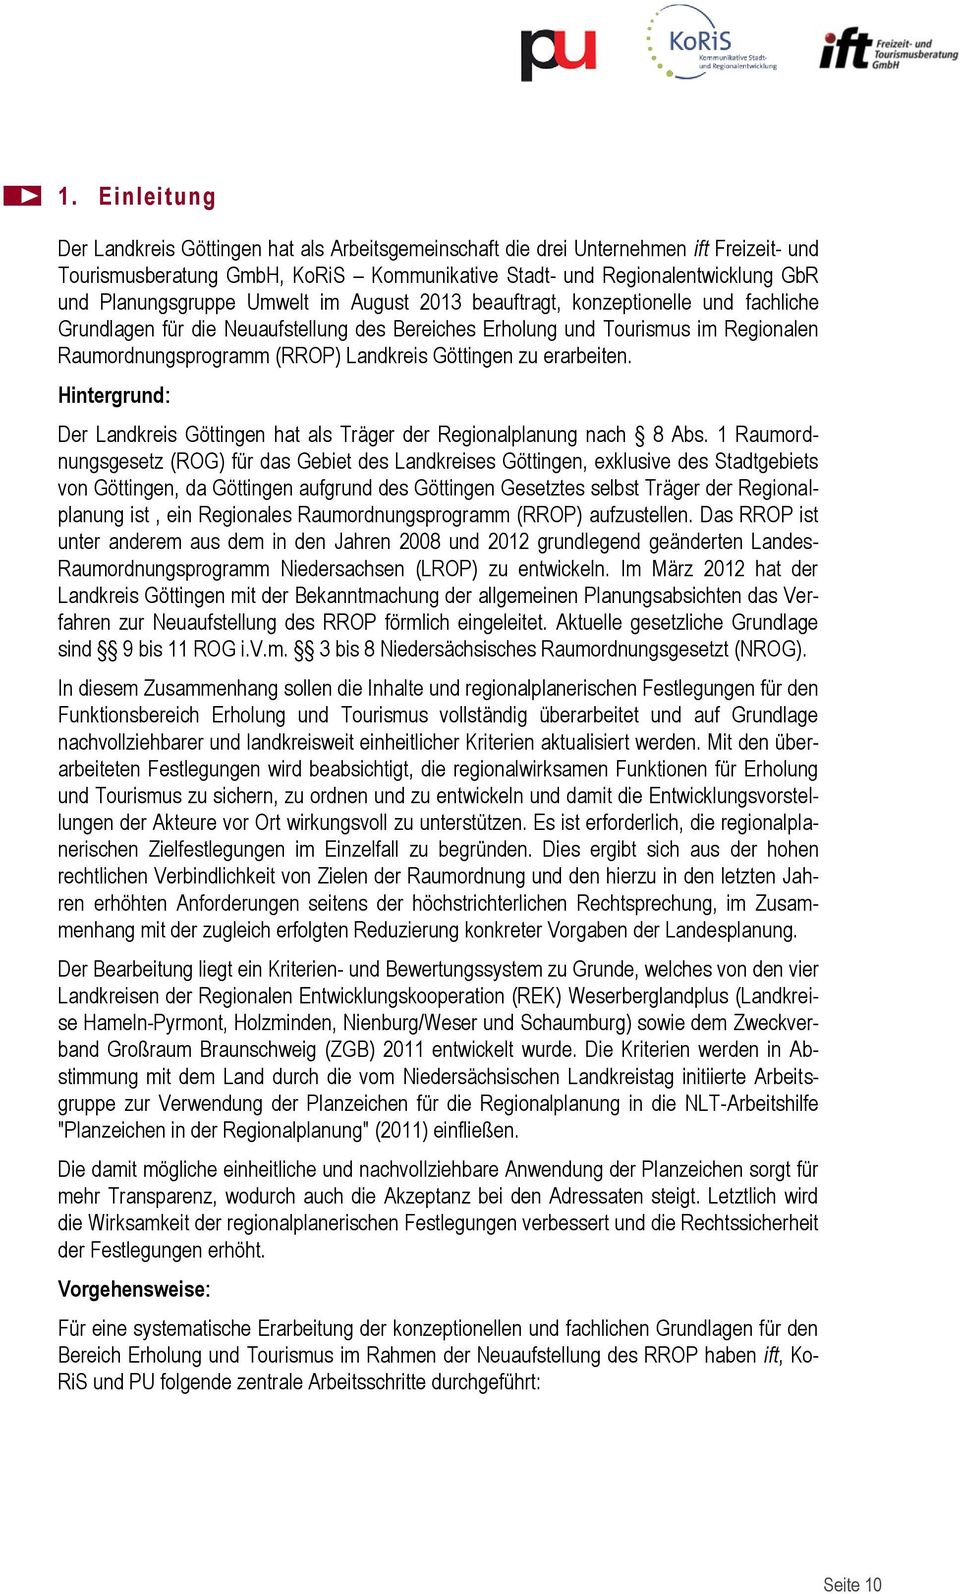 Landkreis Göttingen zu erarbeiten. Hintergrund: Der Landkreis Göttingen hat als Träger der Regionalplanung nach 8 Abs.